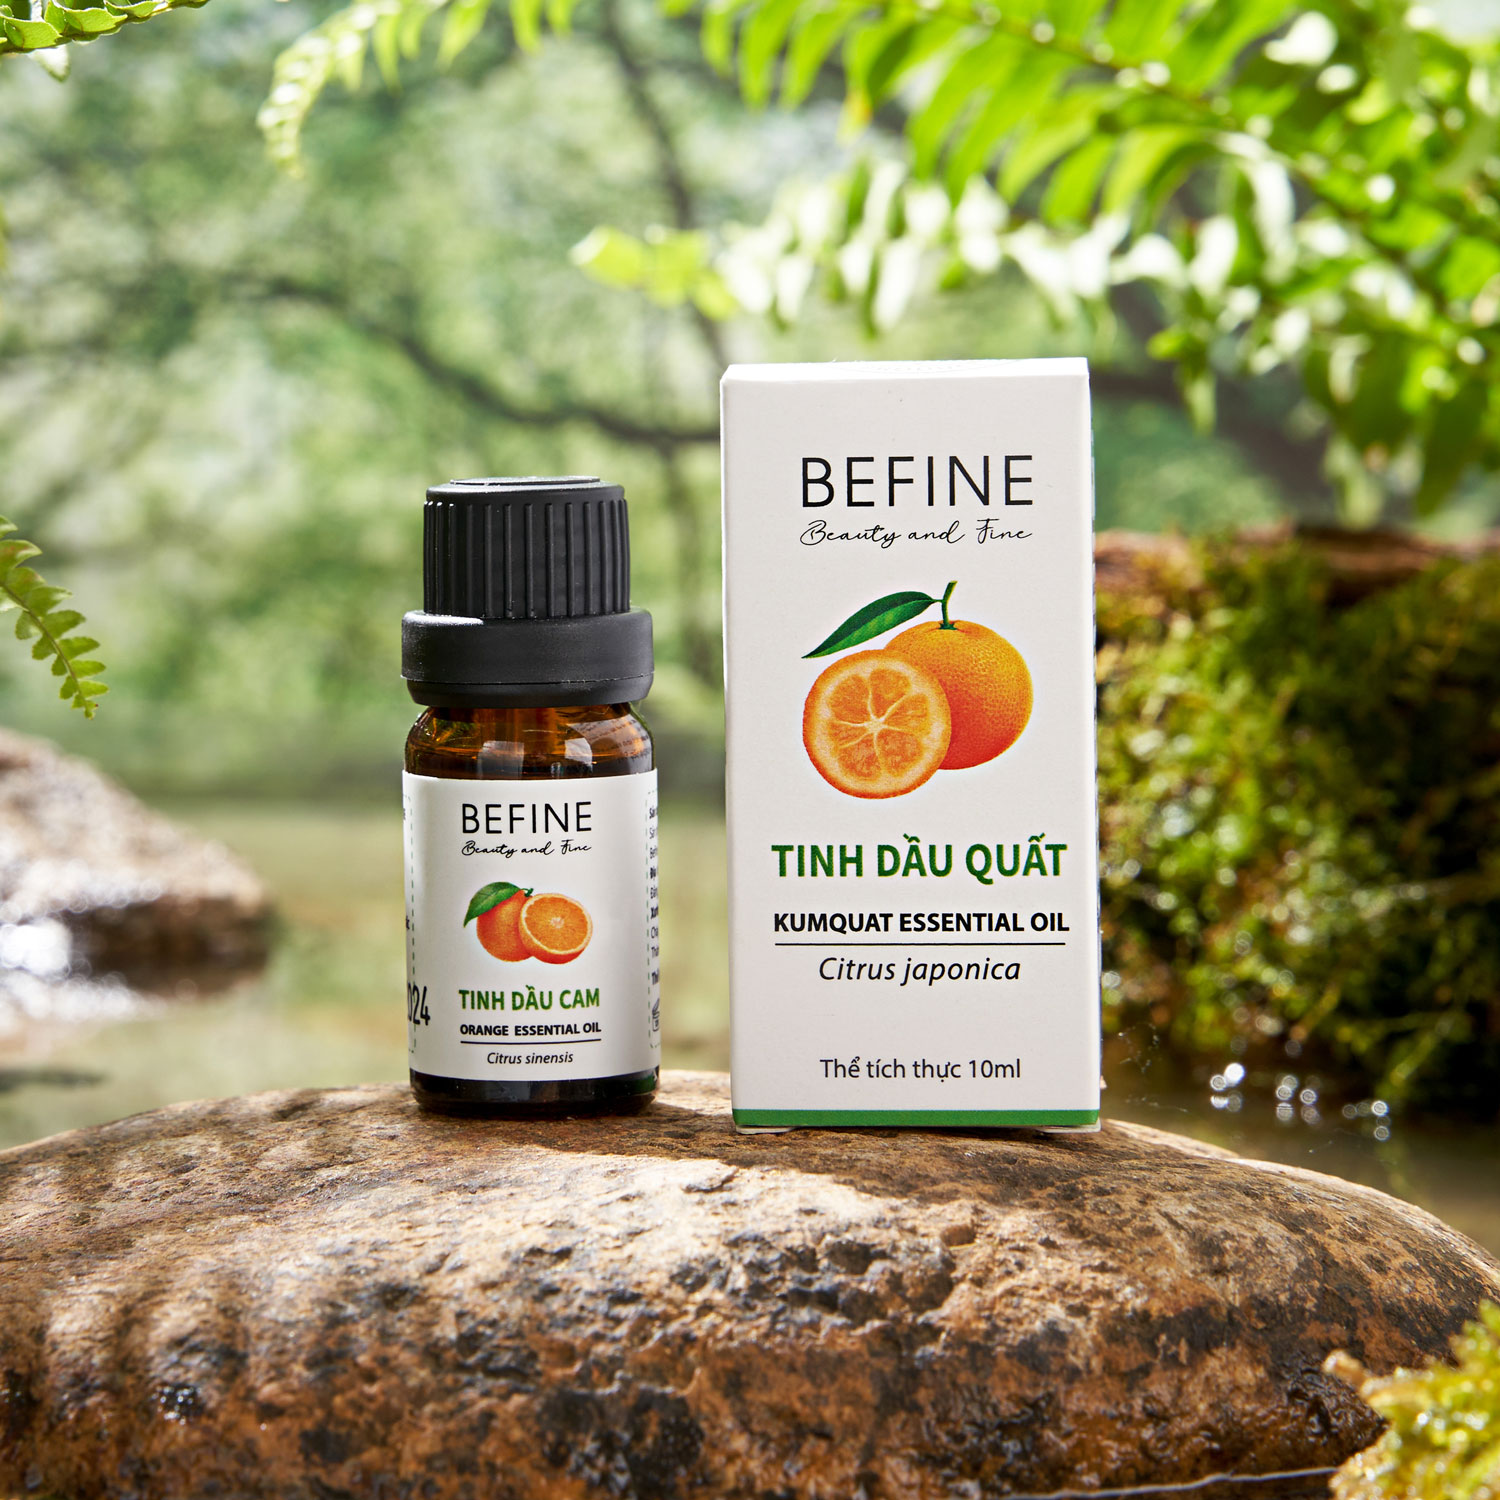 Tinh dầu vỏ quất (trái tắc) Befine nguyên chất hương thanh mát